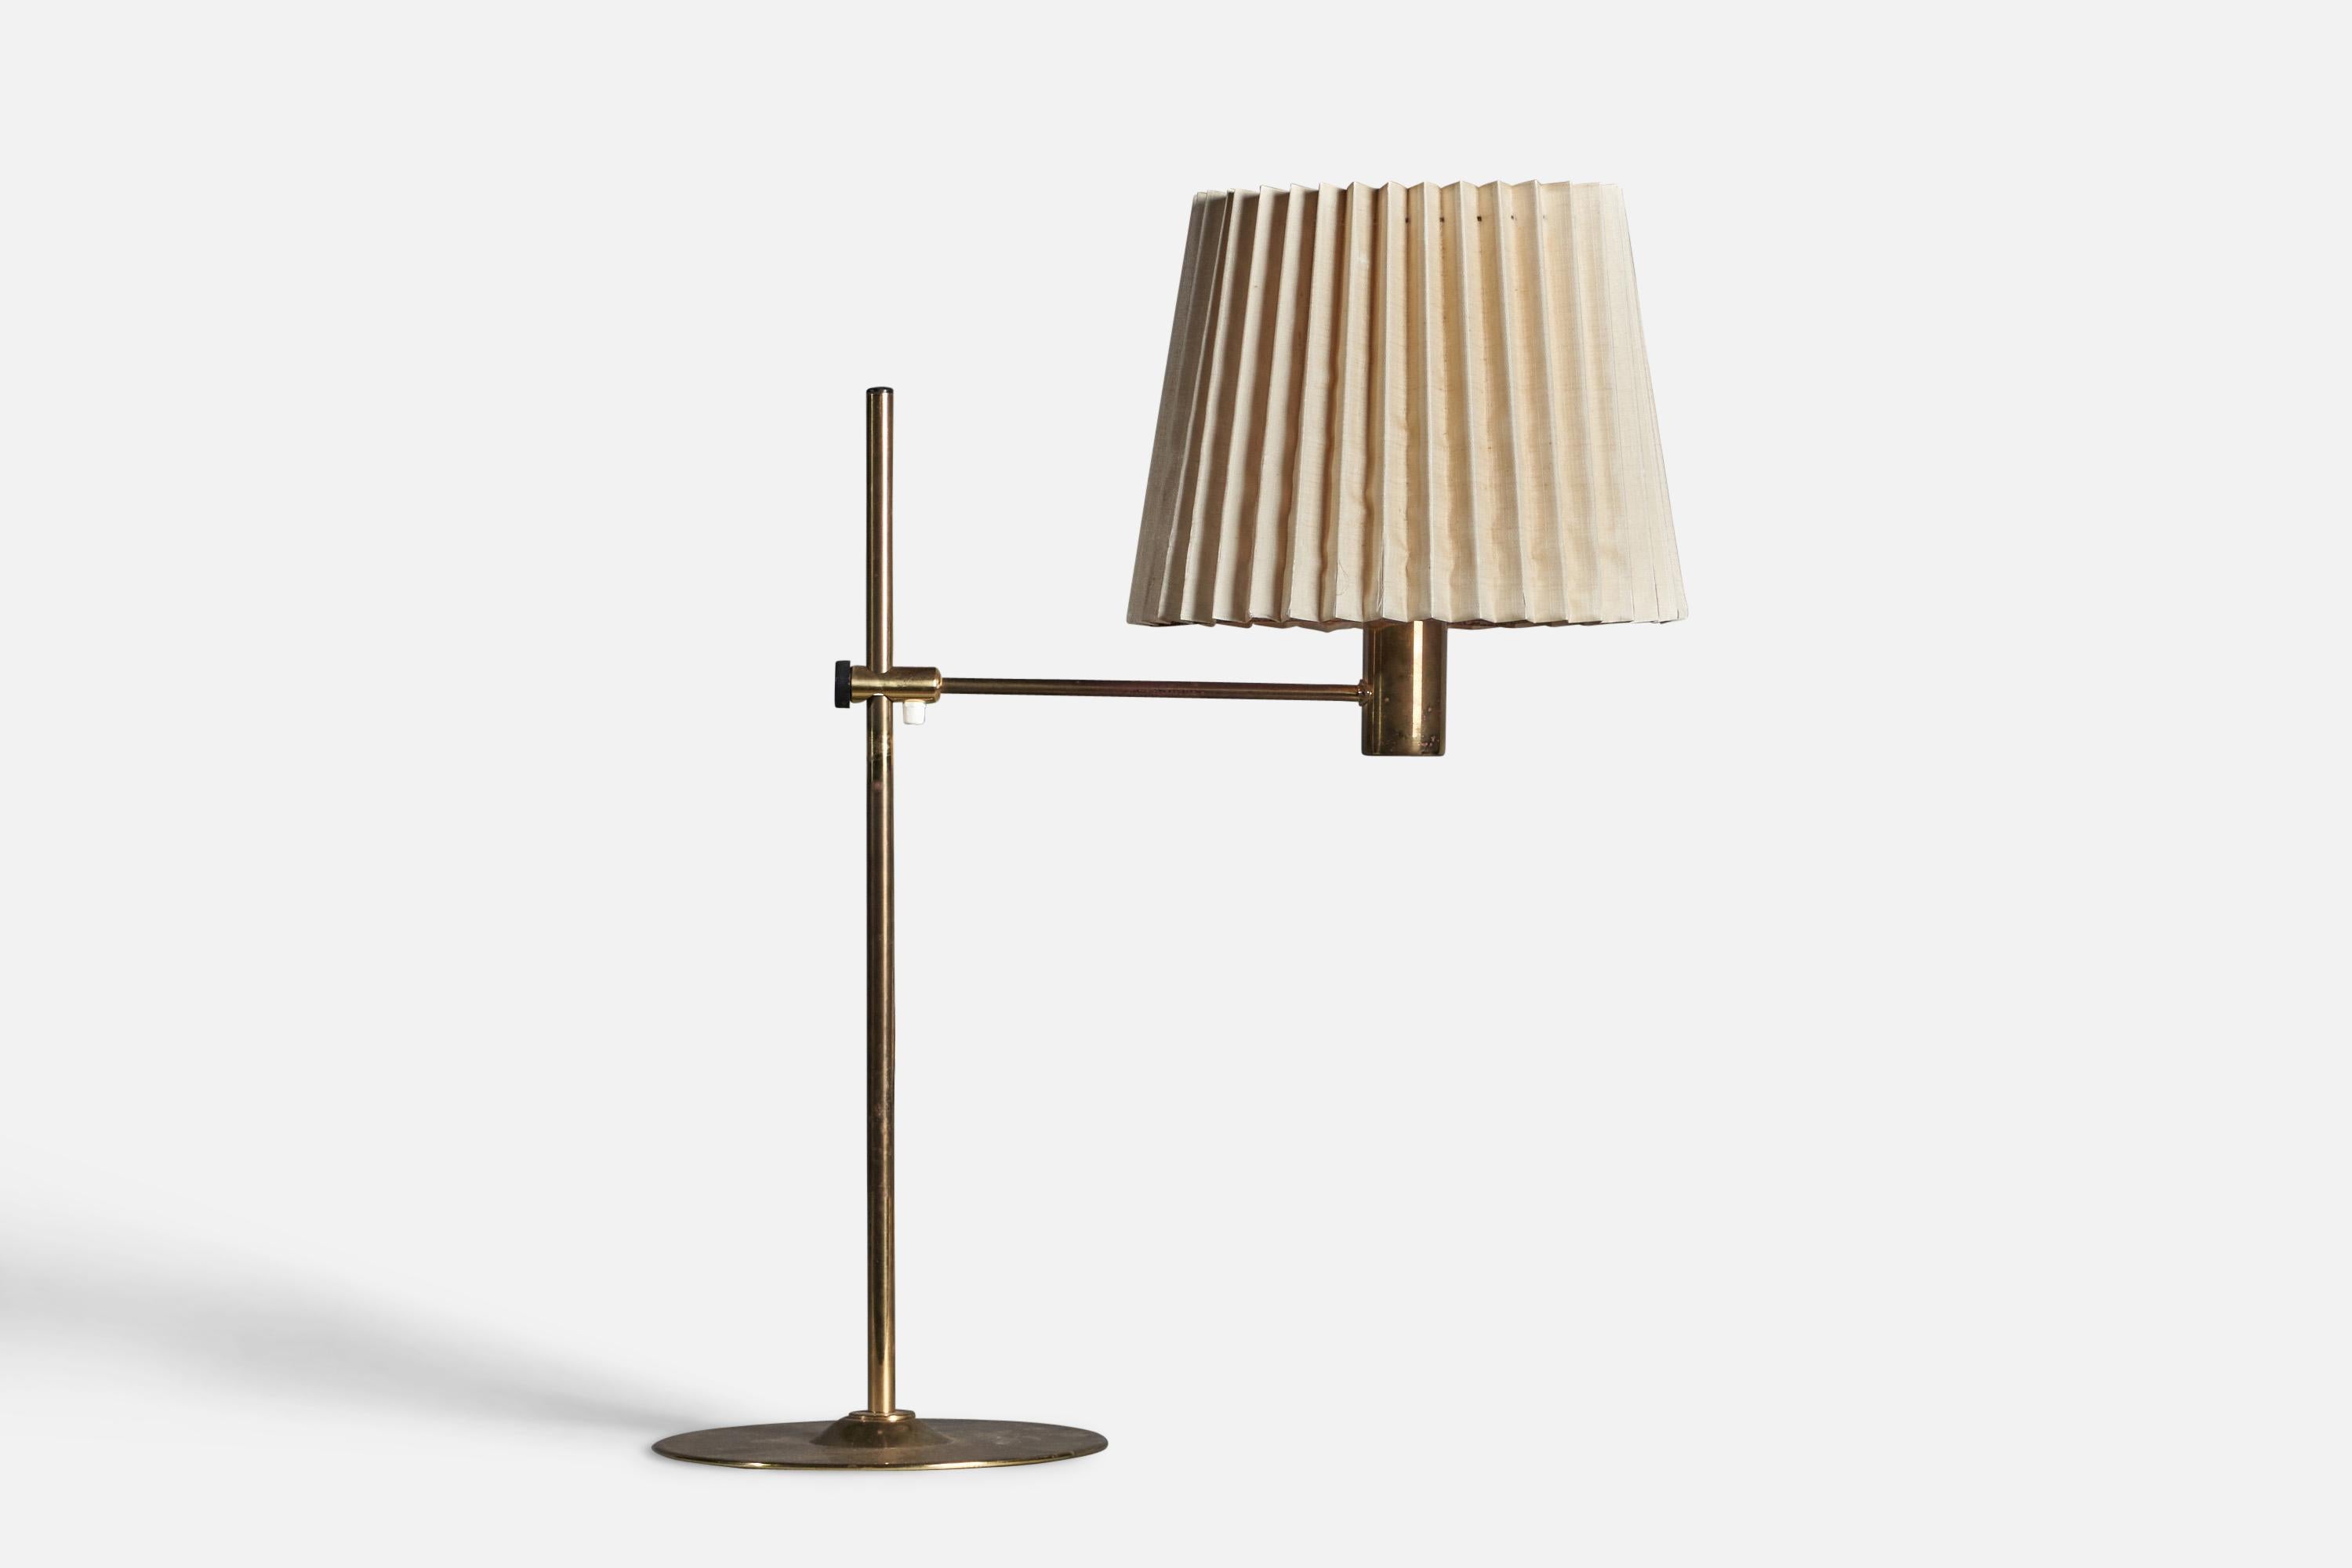 Lampe de table réglable en laiton et tissu beige, conçue et produite en Suède, années 1970.

Dimensions globales (pouces) : 28,5